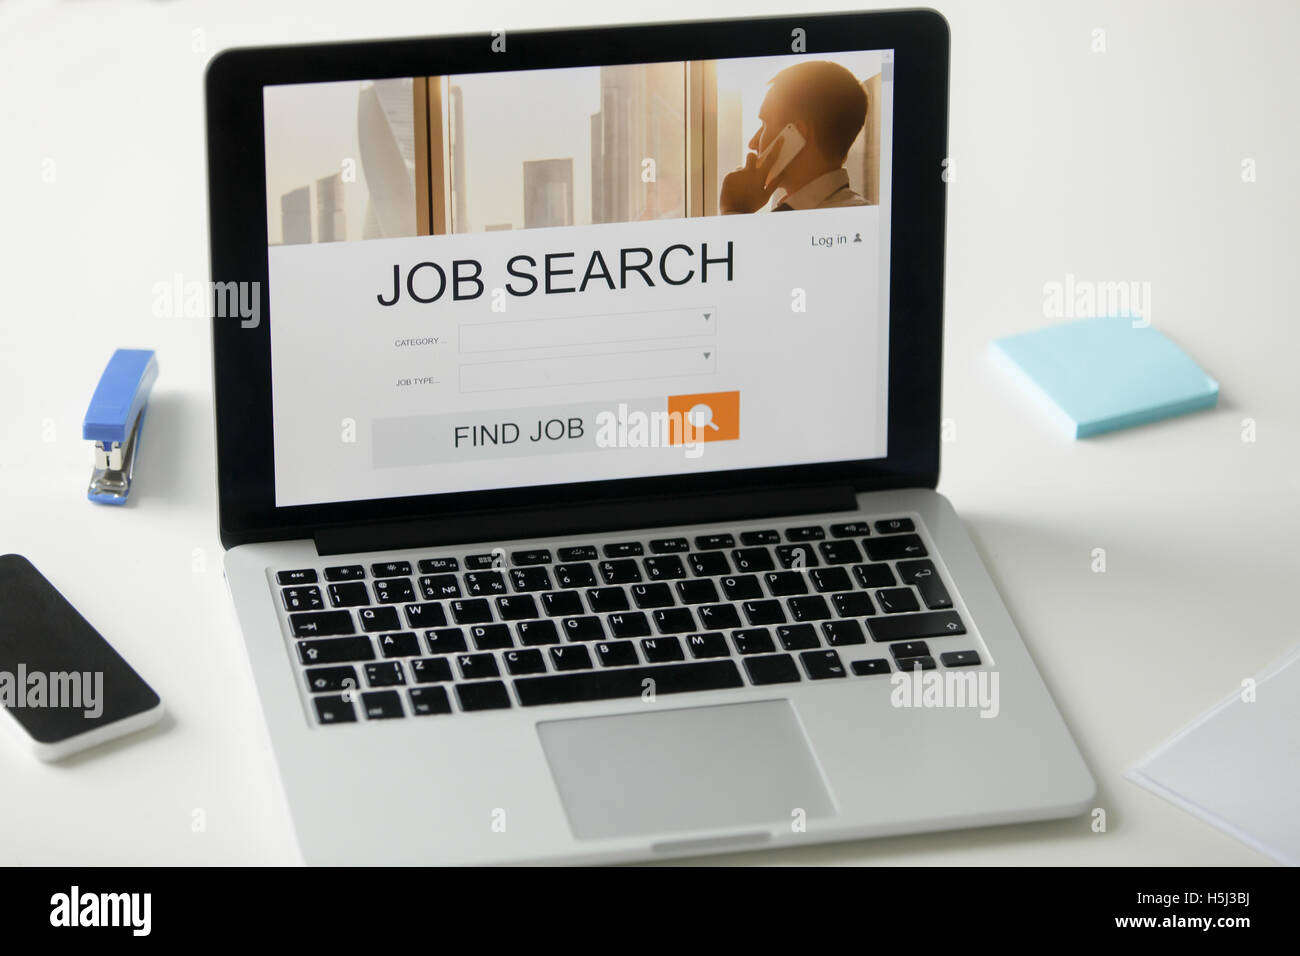 Offenen Laptop auf dem Schreibtisch, Job-Suche-Titel auf dem Bildschirm Stockfoto